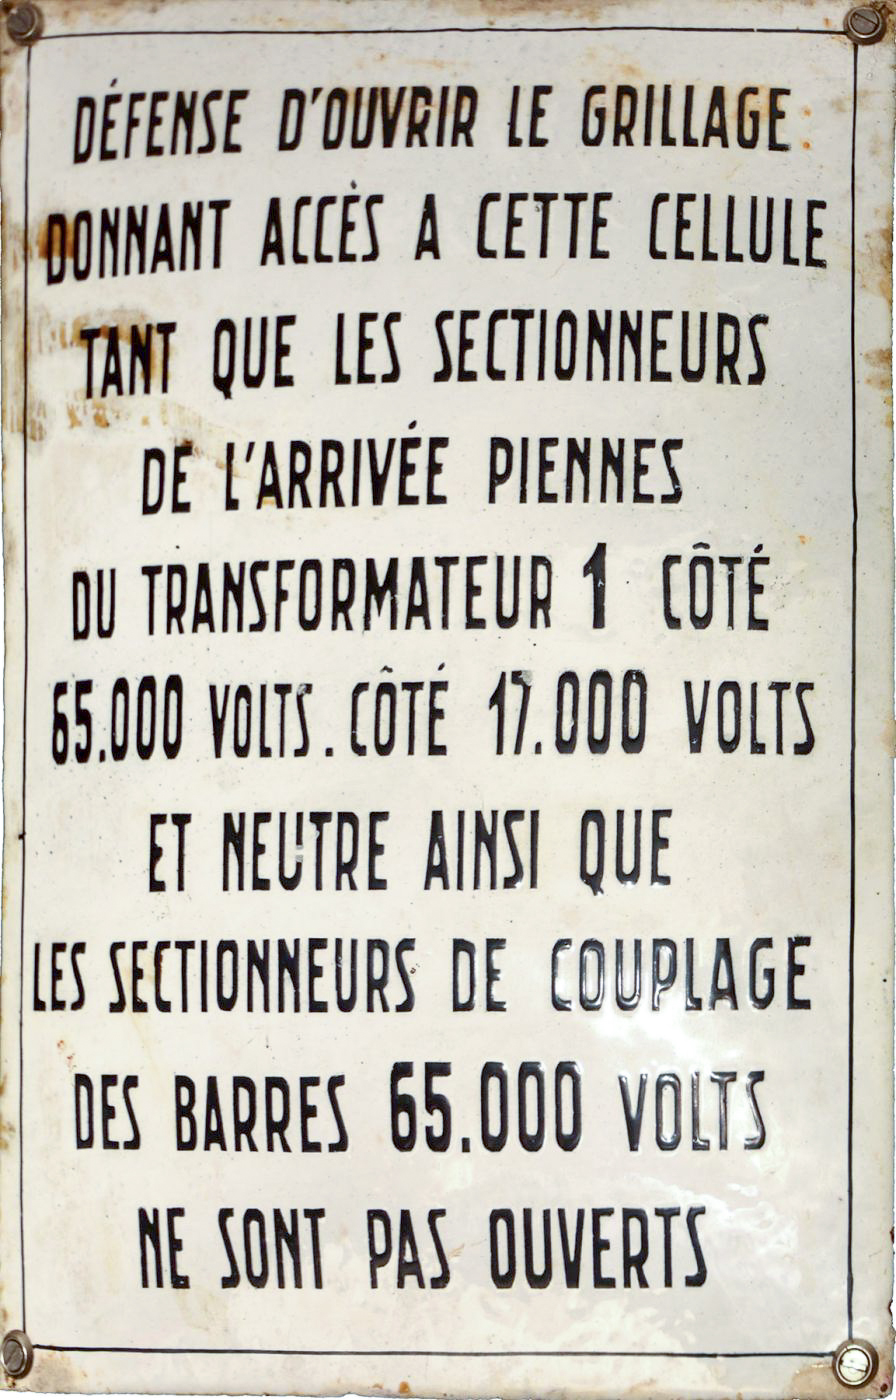 Ligne Maginot - XIVRY CIRCOURT - (Infrastructures électriques) - Plaque émaillée
Accès jeu de barres omnibus 65KV